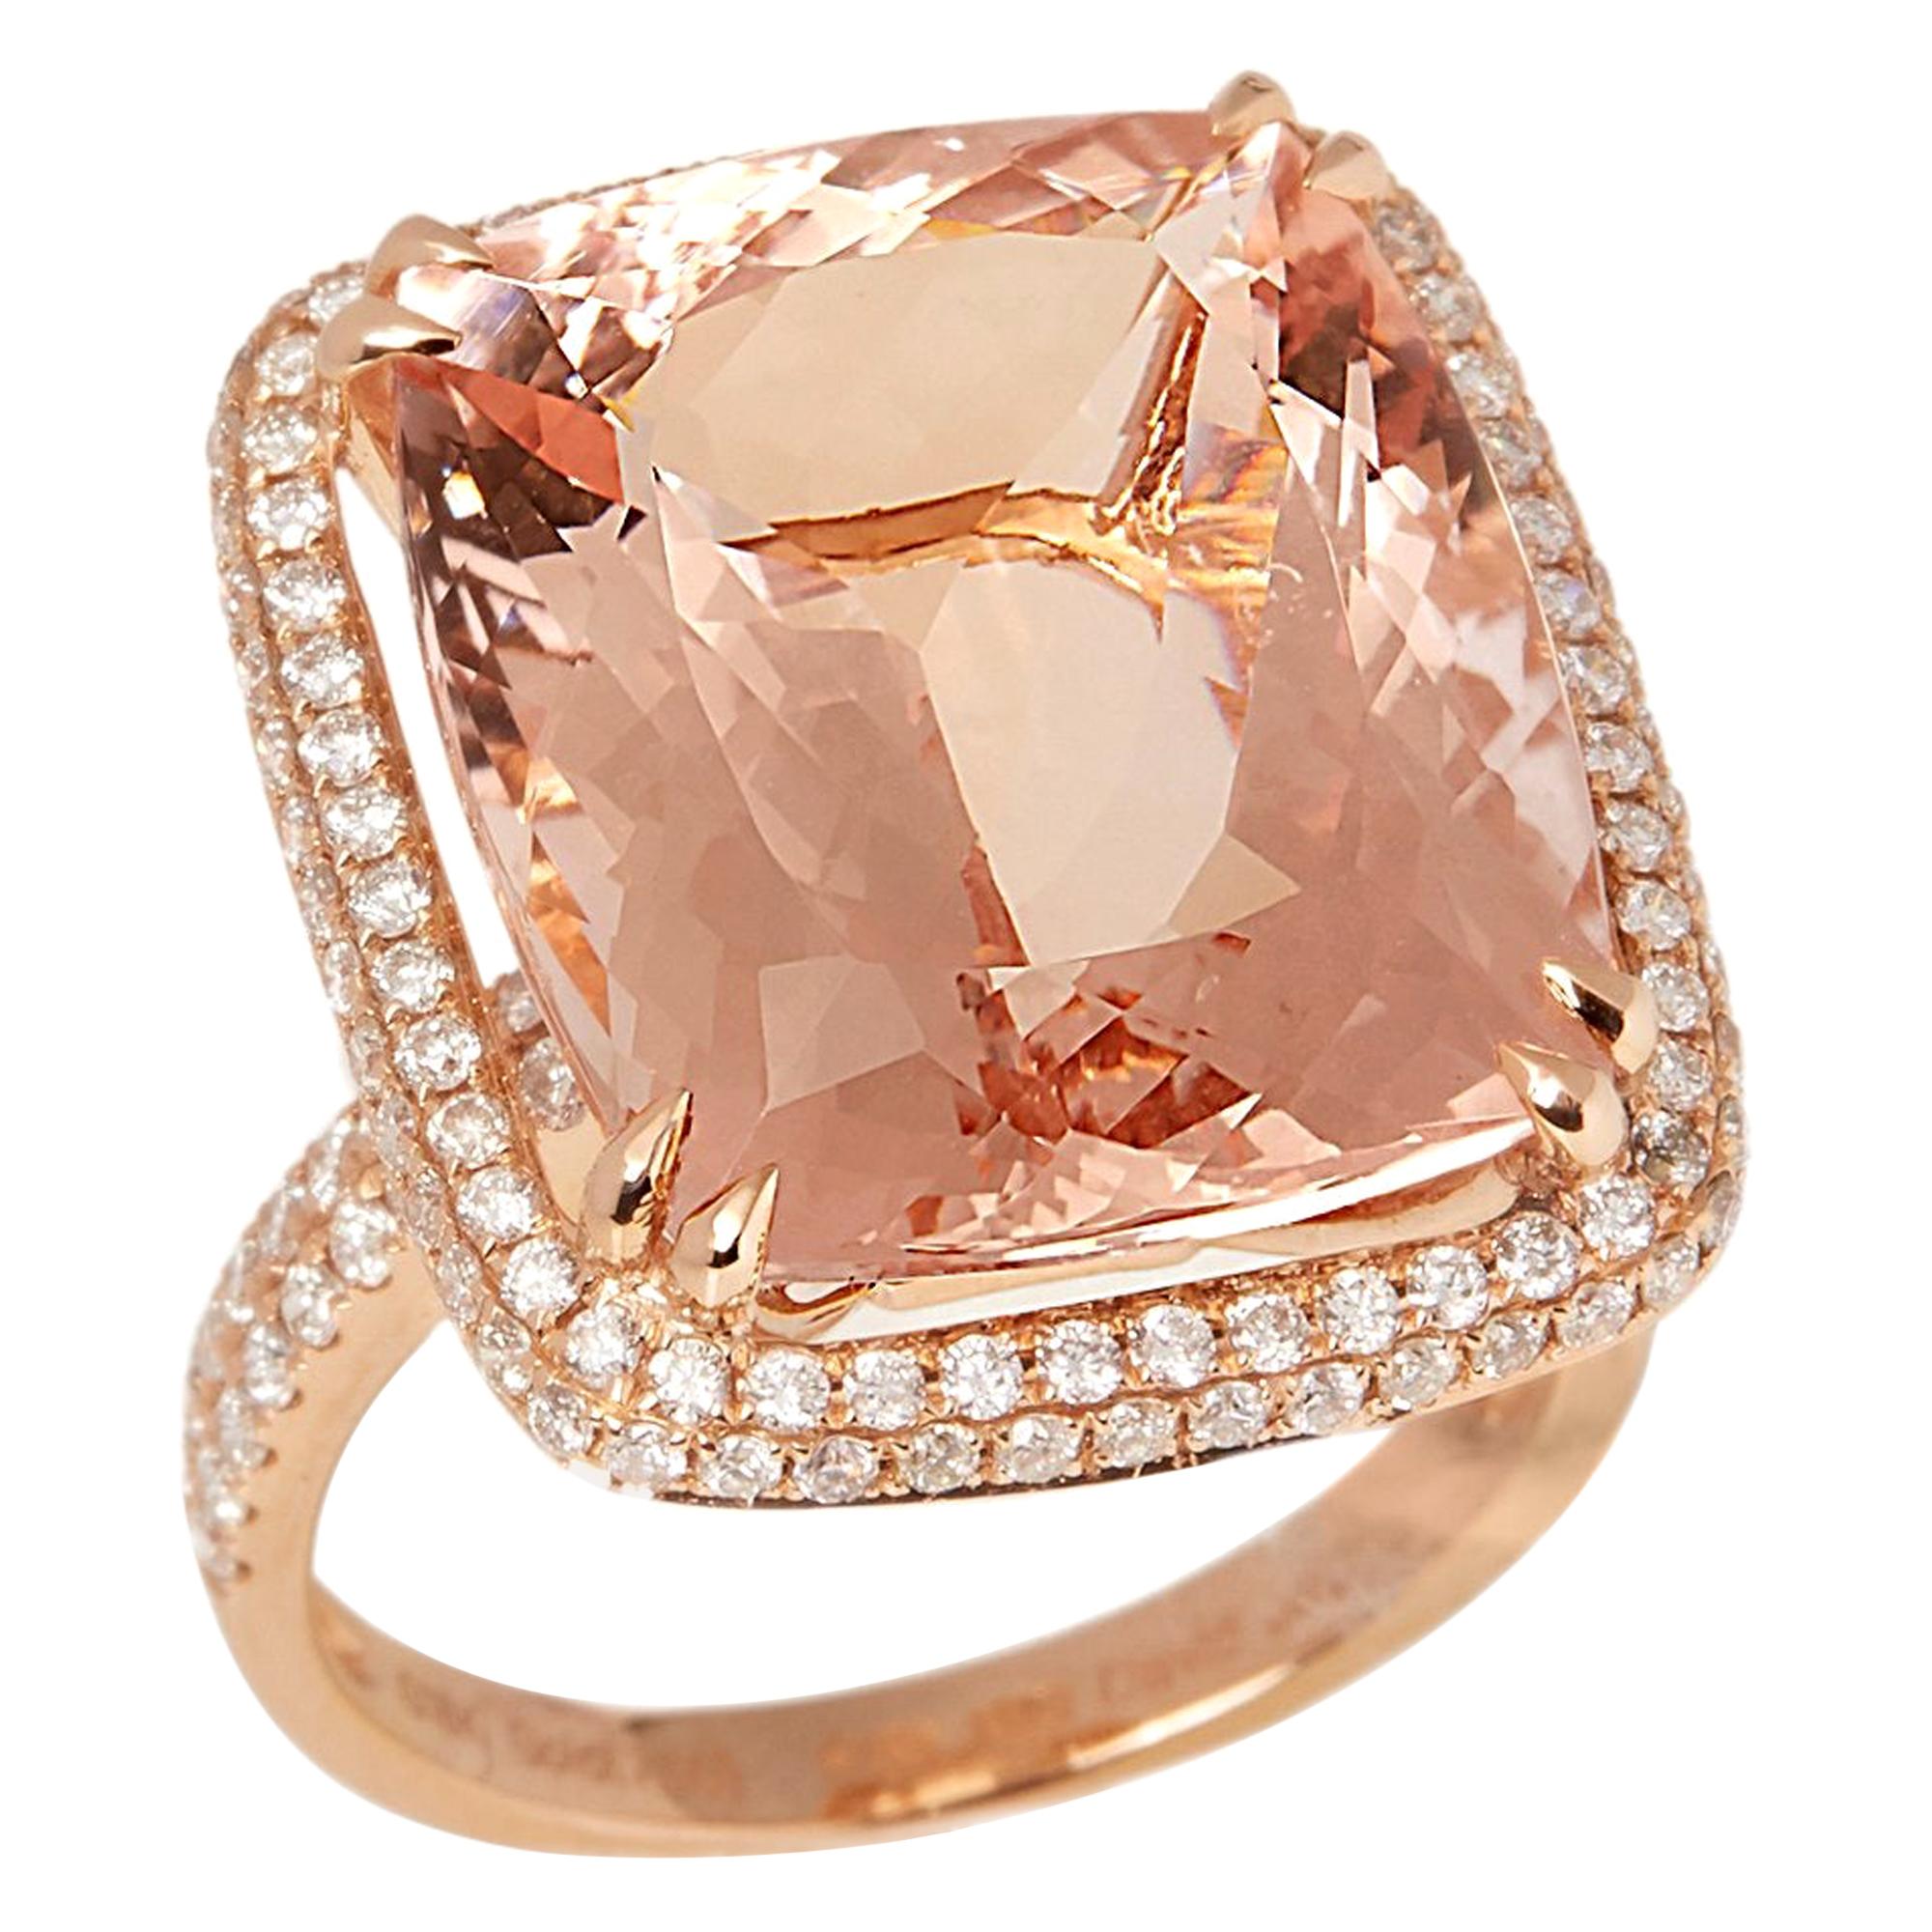 Zertifizierter 16,71ct Cushion Cut brasilianischer Morganit und Diamant 18 ct. Gold Ring